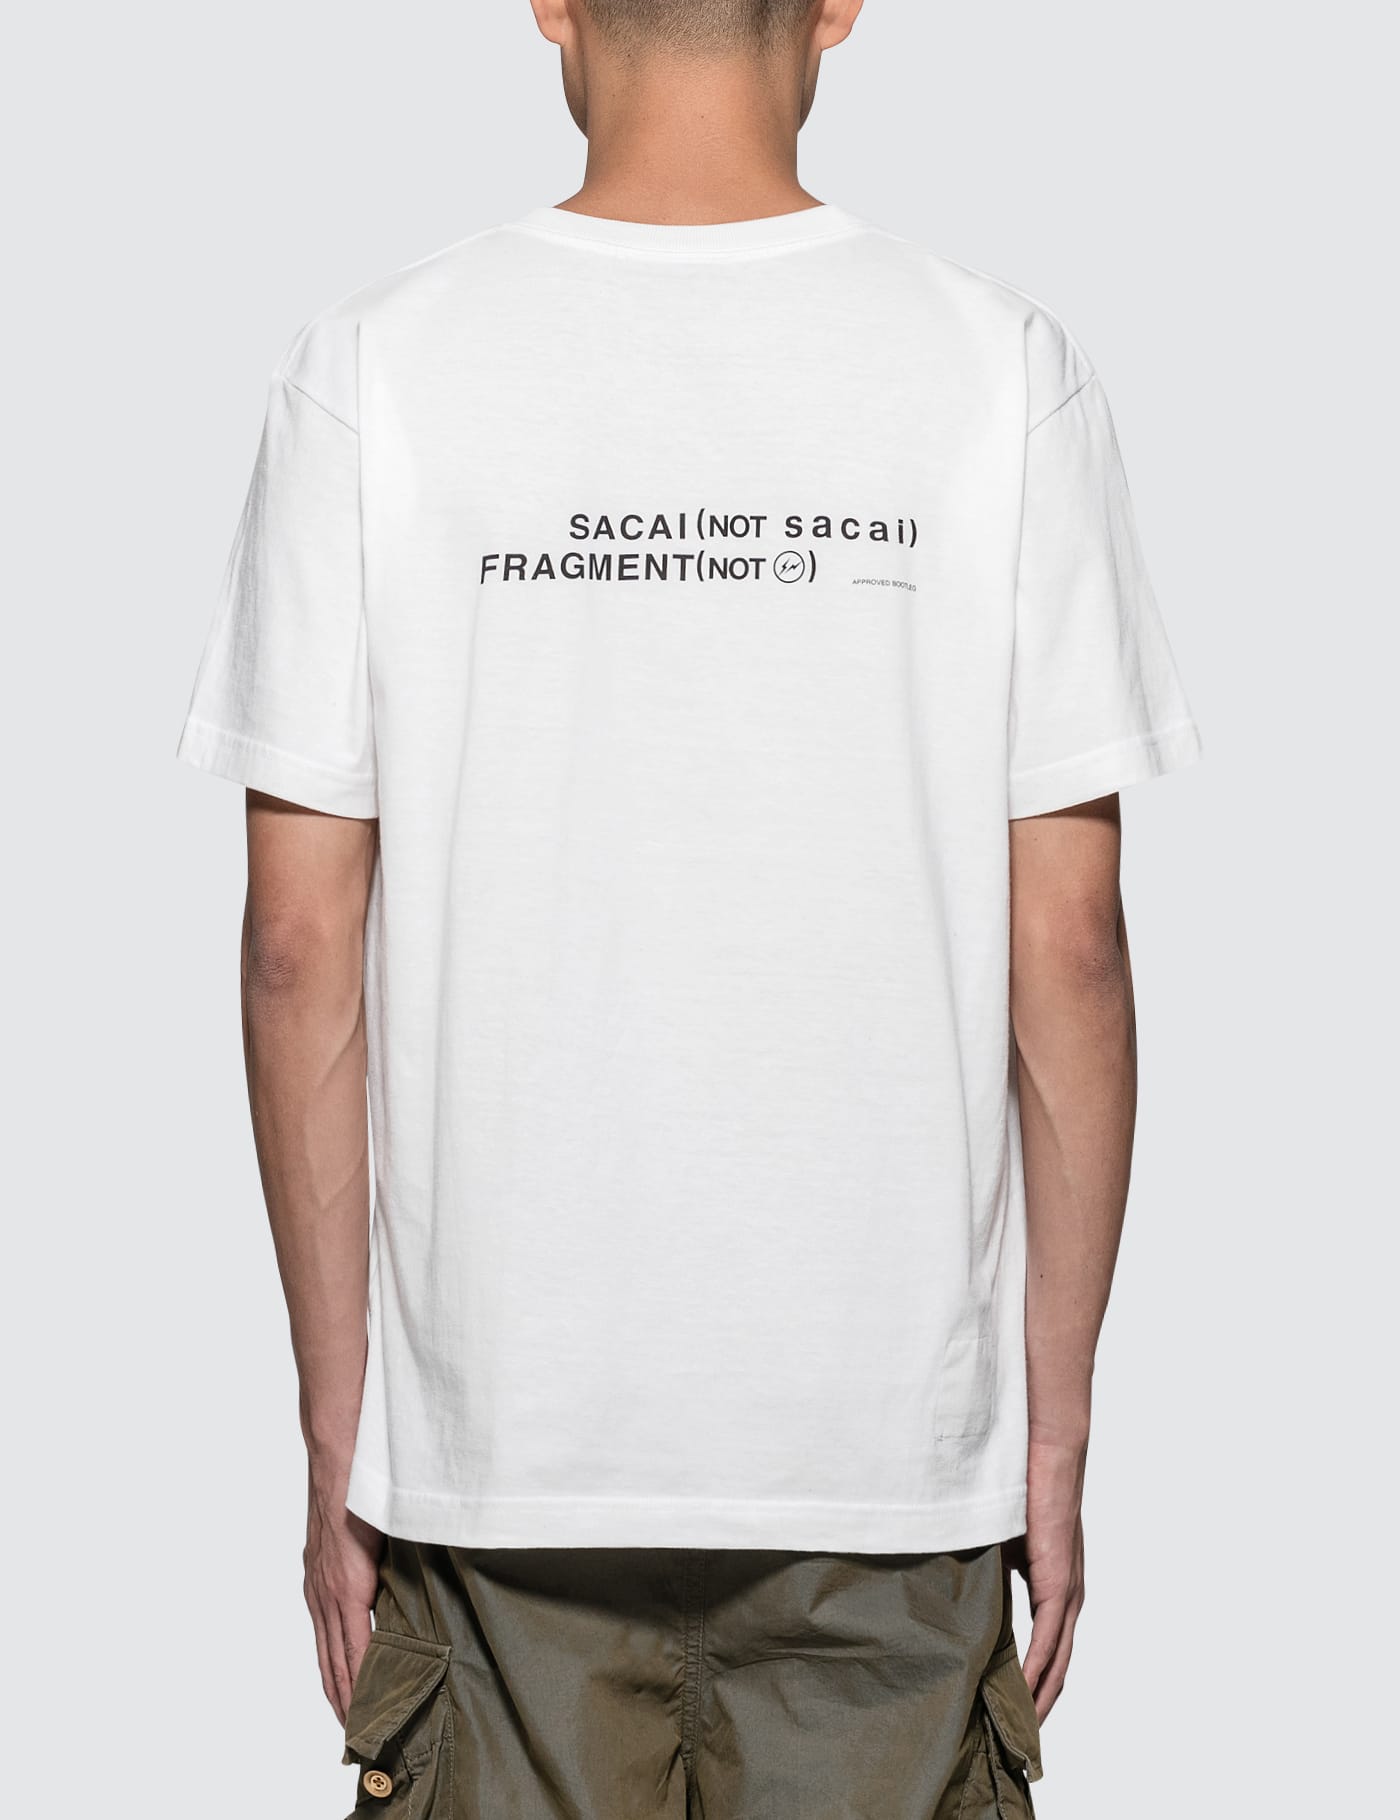 Sacai x Fragment Design - Sacai S/S T-Shirt | HBX - Globally ...